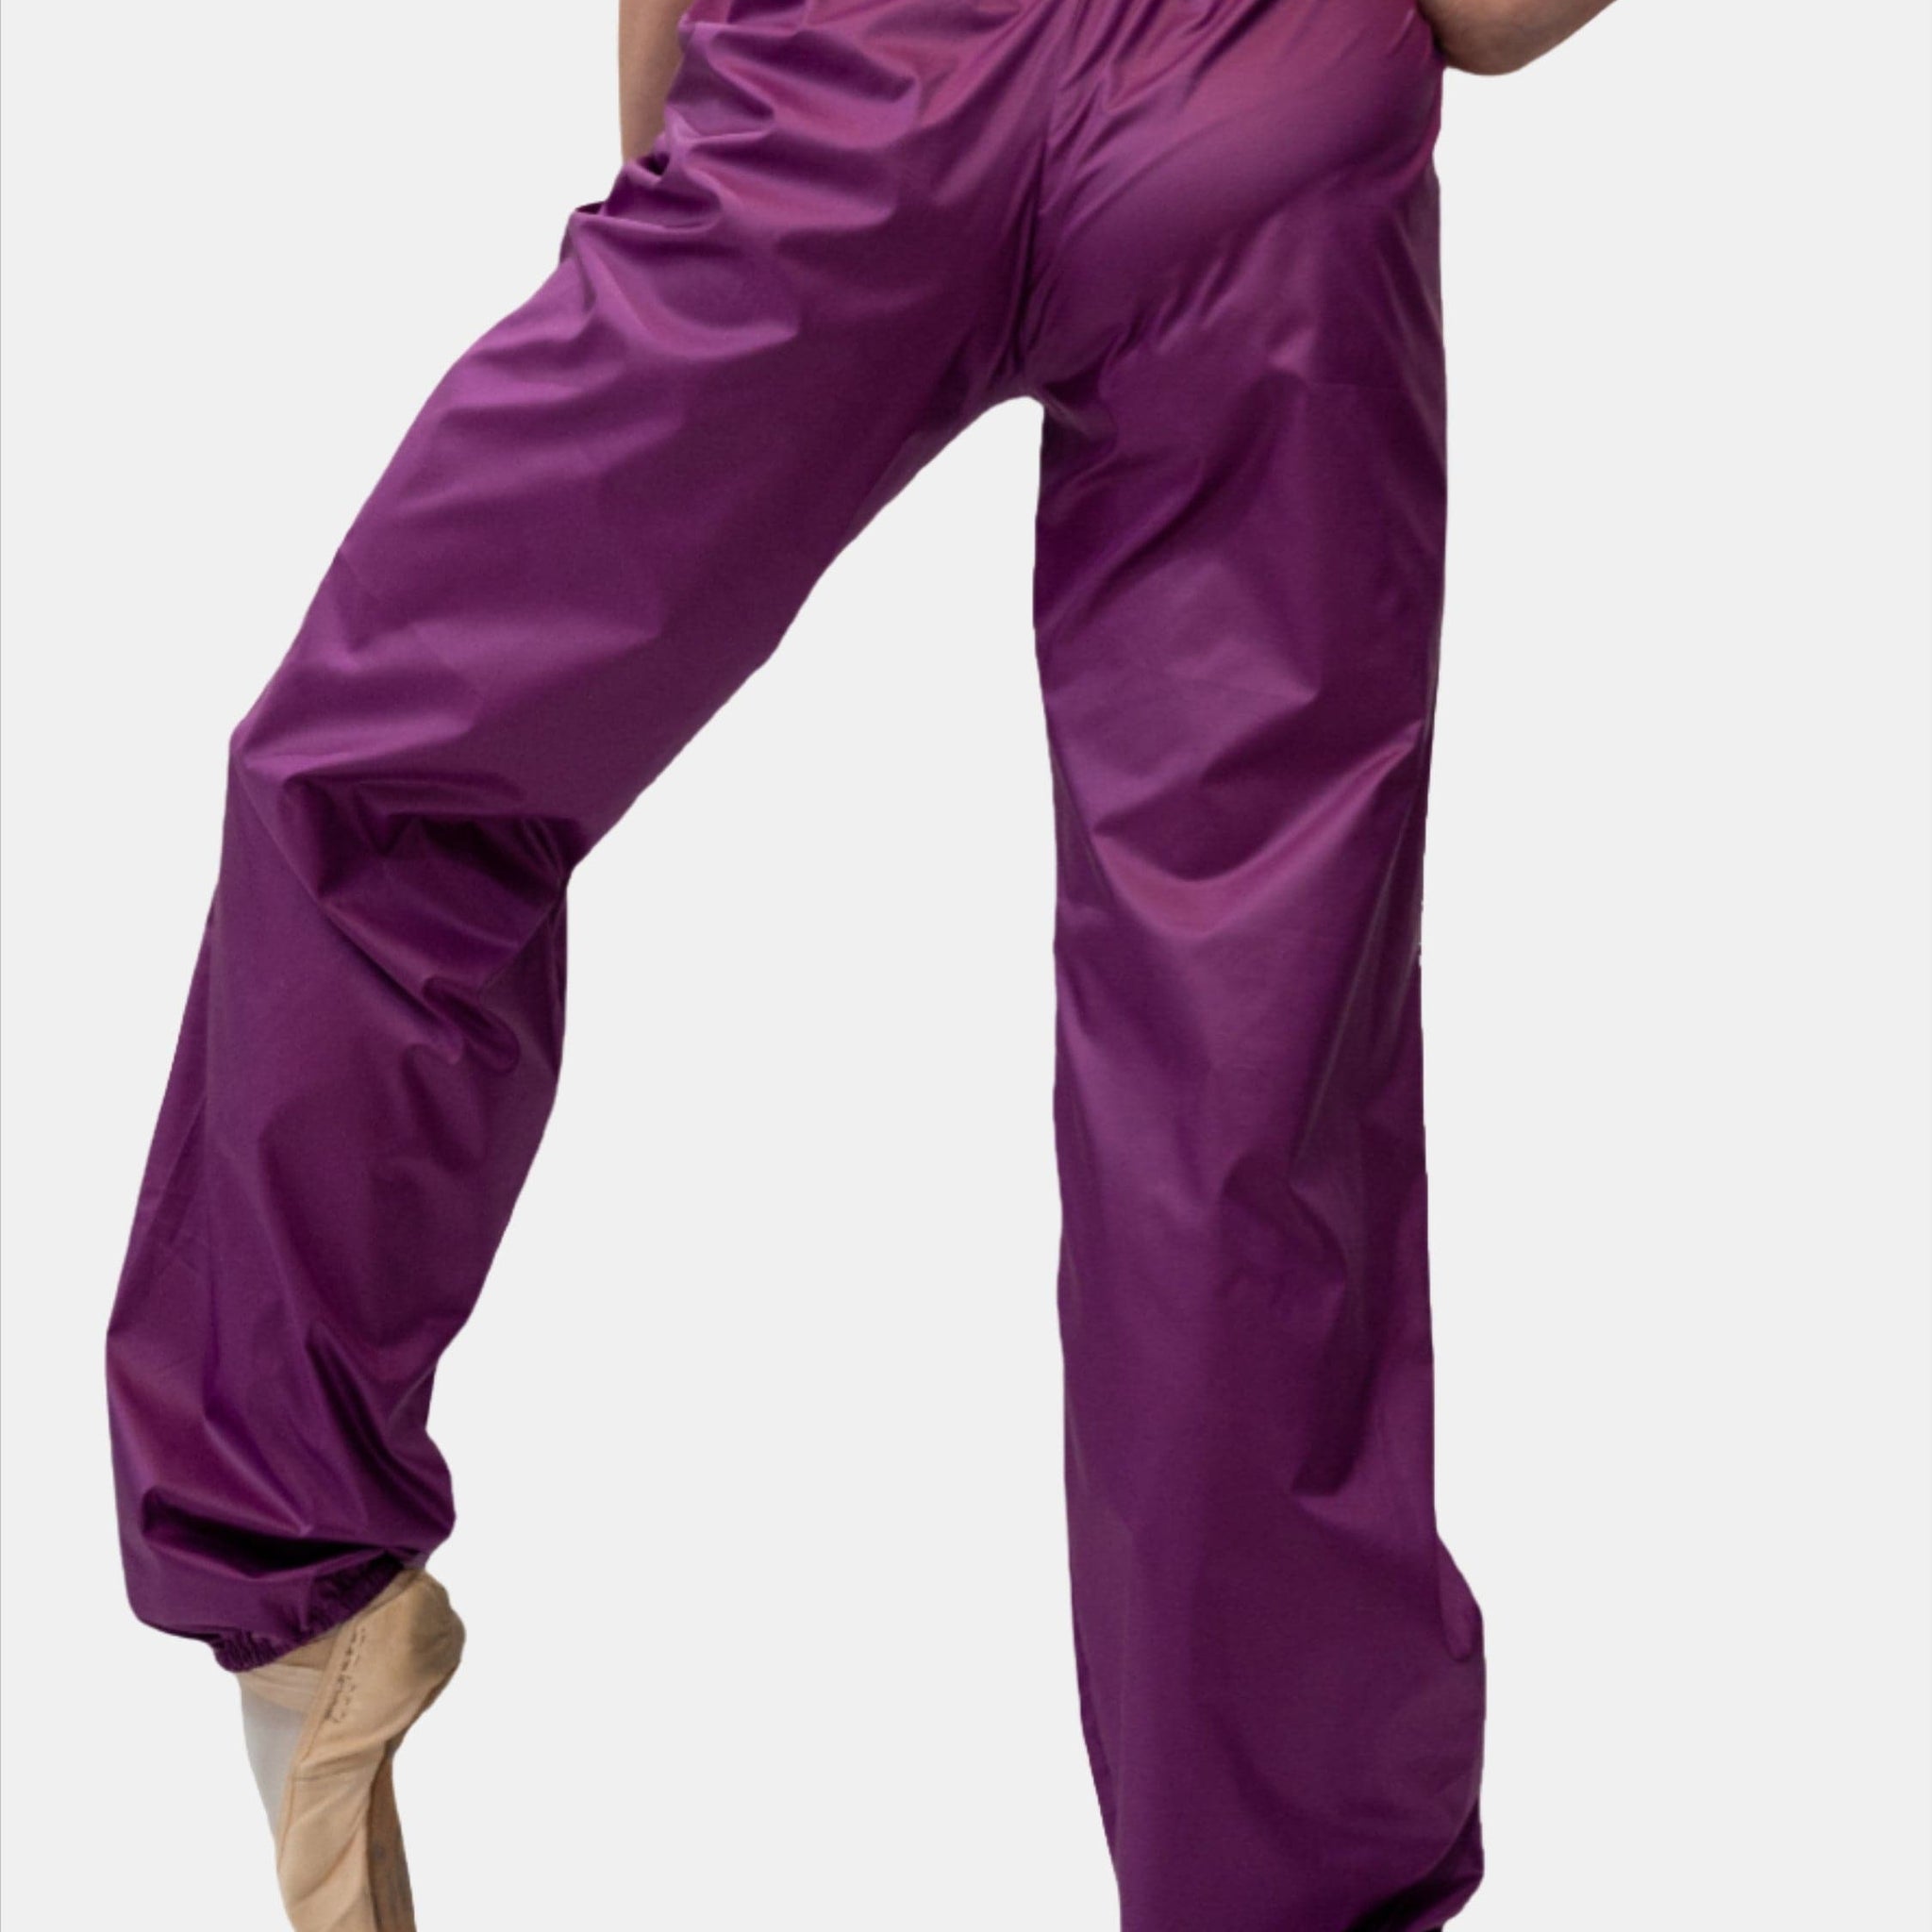 Purple Warm-Up Dance Trash Bag Pants MP5003 - Atelier della Danza MP